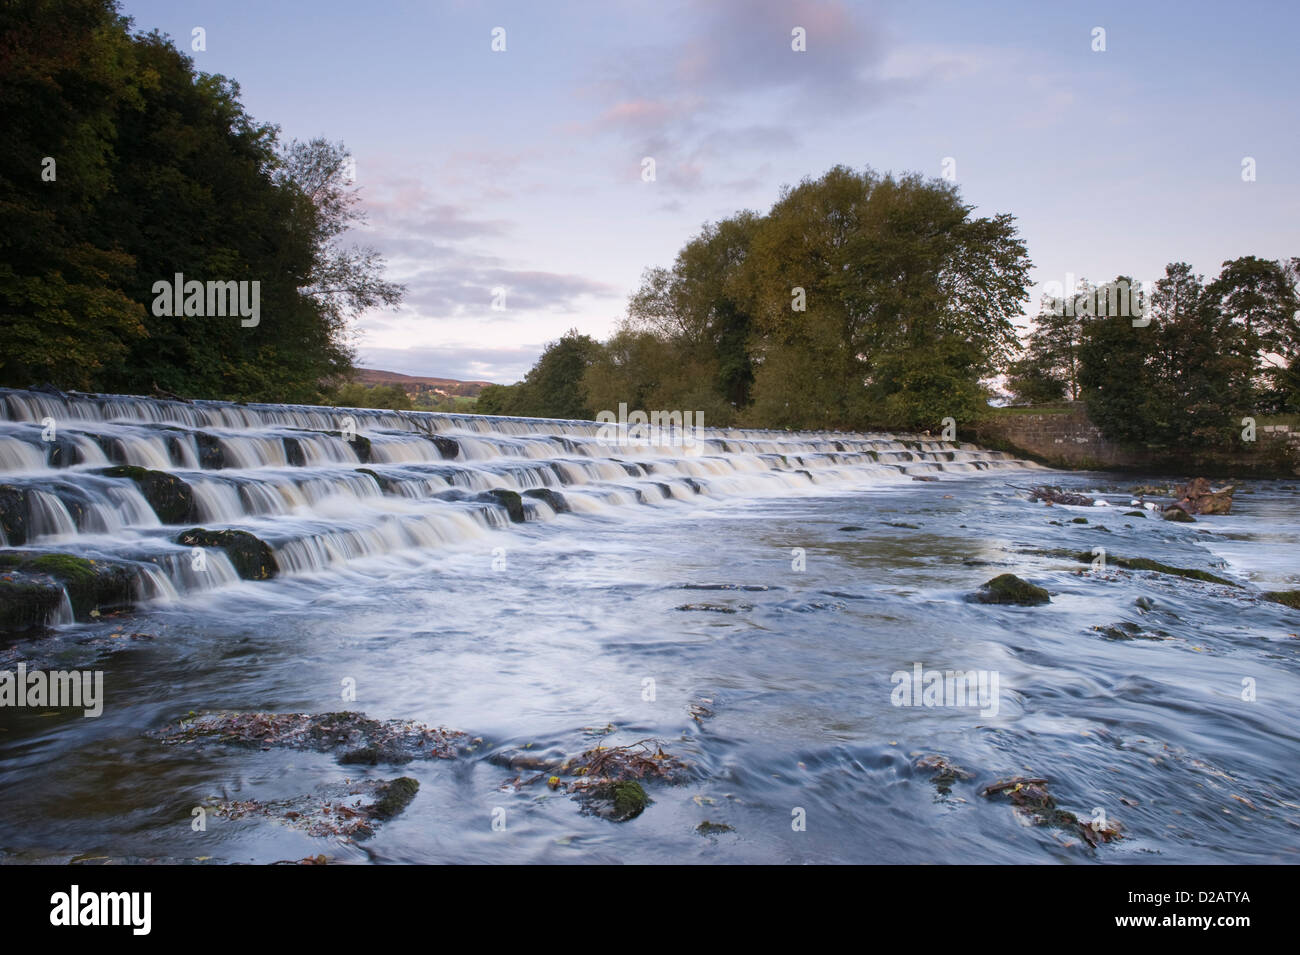 Scenic, soir, paysage rural de l'écoulement de l'eau et tumbling Weir & bas sur la rivière Wharfe - étapes, Burley dans Wharfedale, Yorkshire, Angleterre, Royaume-Uni. Banque D'Images